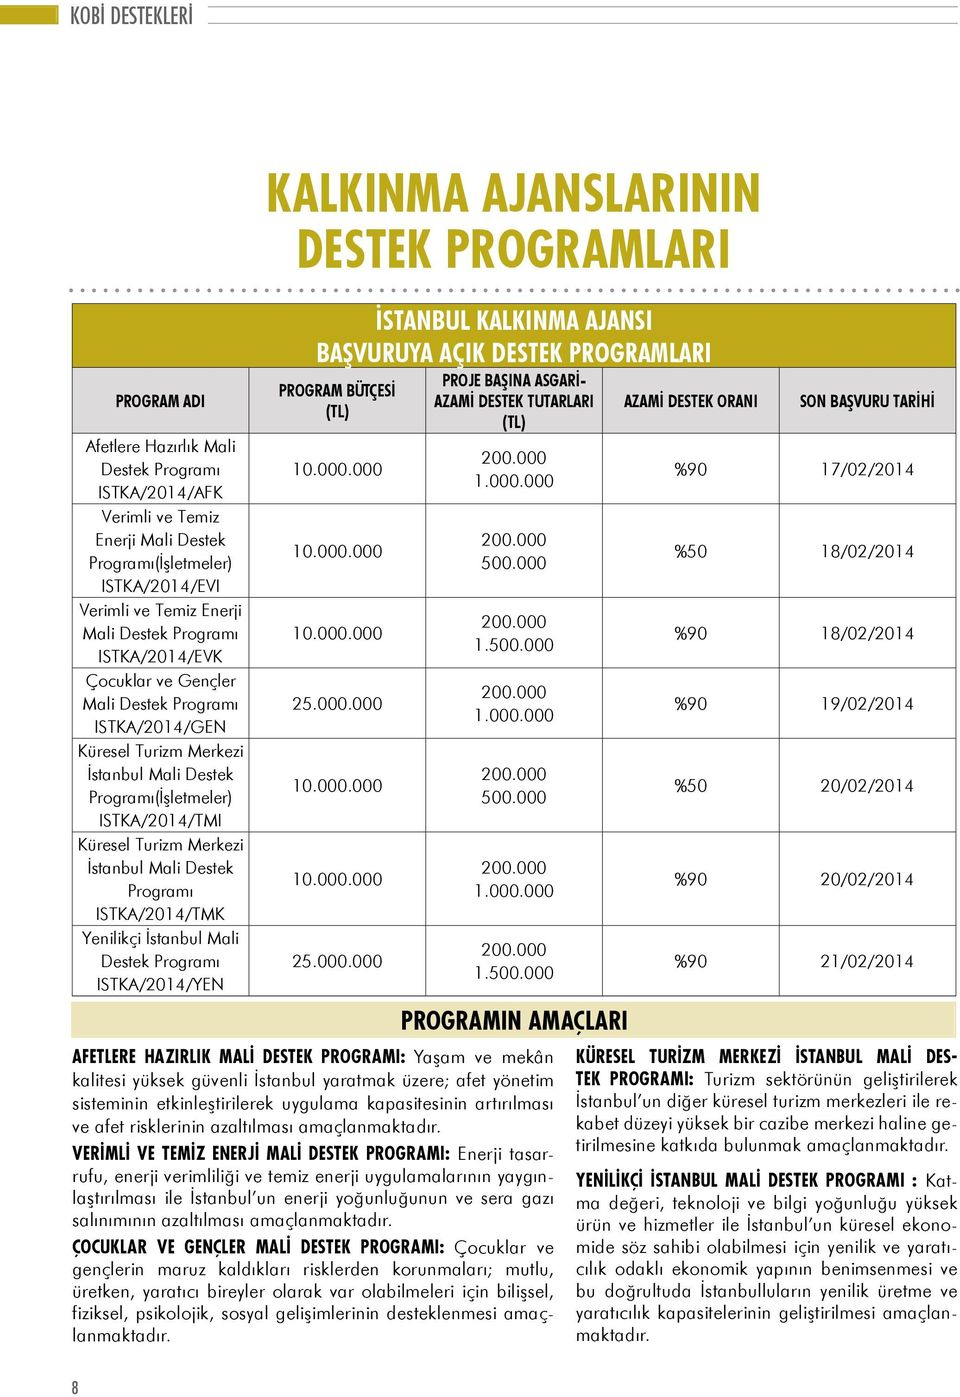 Programı ISTKA/2014/TMK Yenilikçi İstanbul Mali Destek Programı ISTKA/2014/YEN KALKINMA AJANSLARININ DESTEK PROGRAMLARI istanbul kalkınma ajansı Başvuruya Açık destek Programları Program bütçesi (TL)